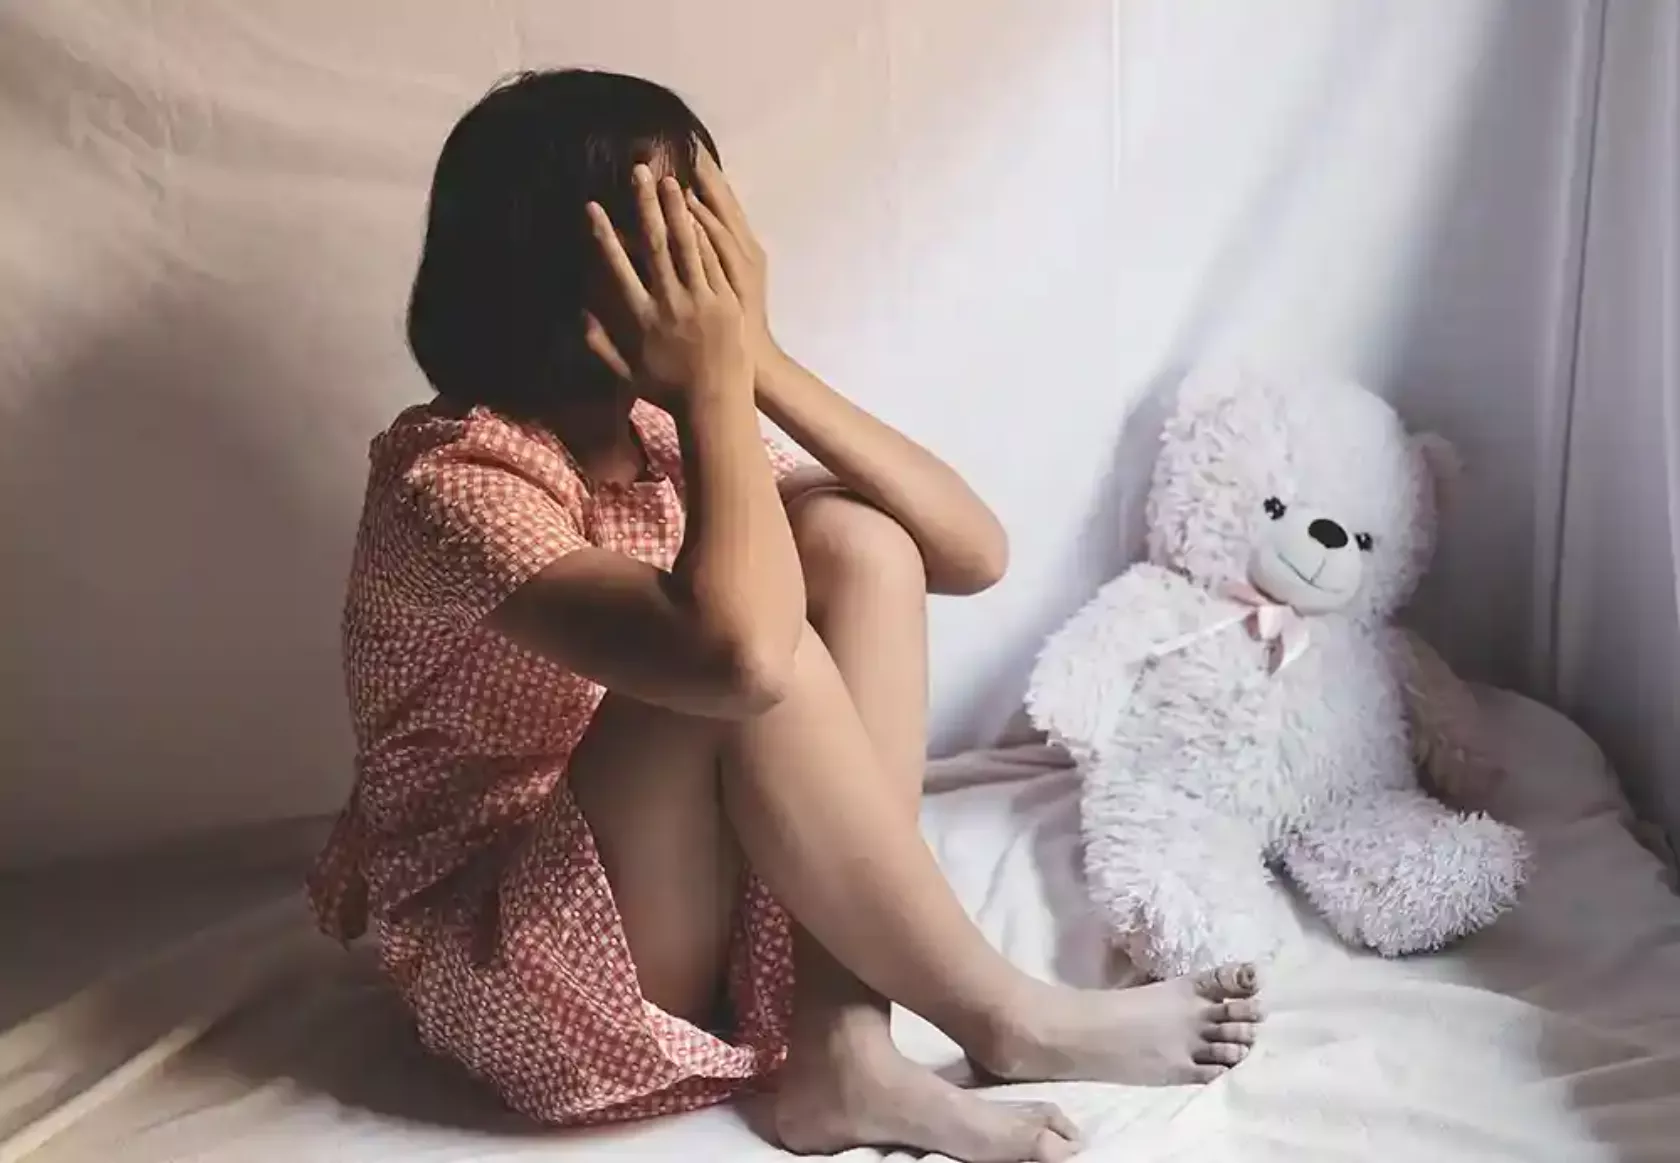 Mädchen sitzt mit verzweifeltem Ausdruck und den Händen vor dem Gesicht mit einem Teddybär im Bett.